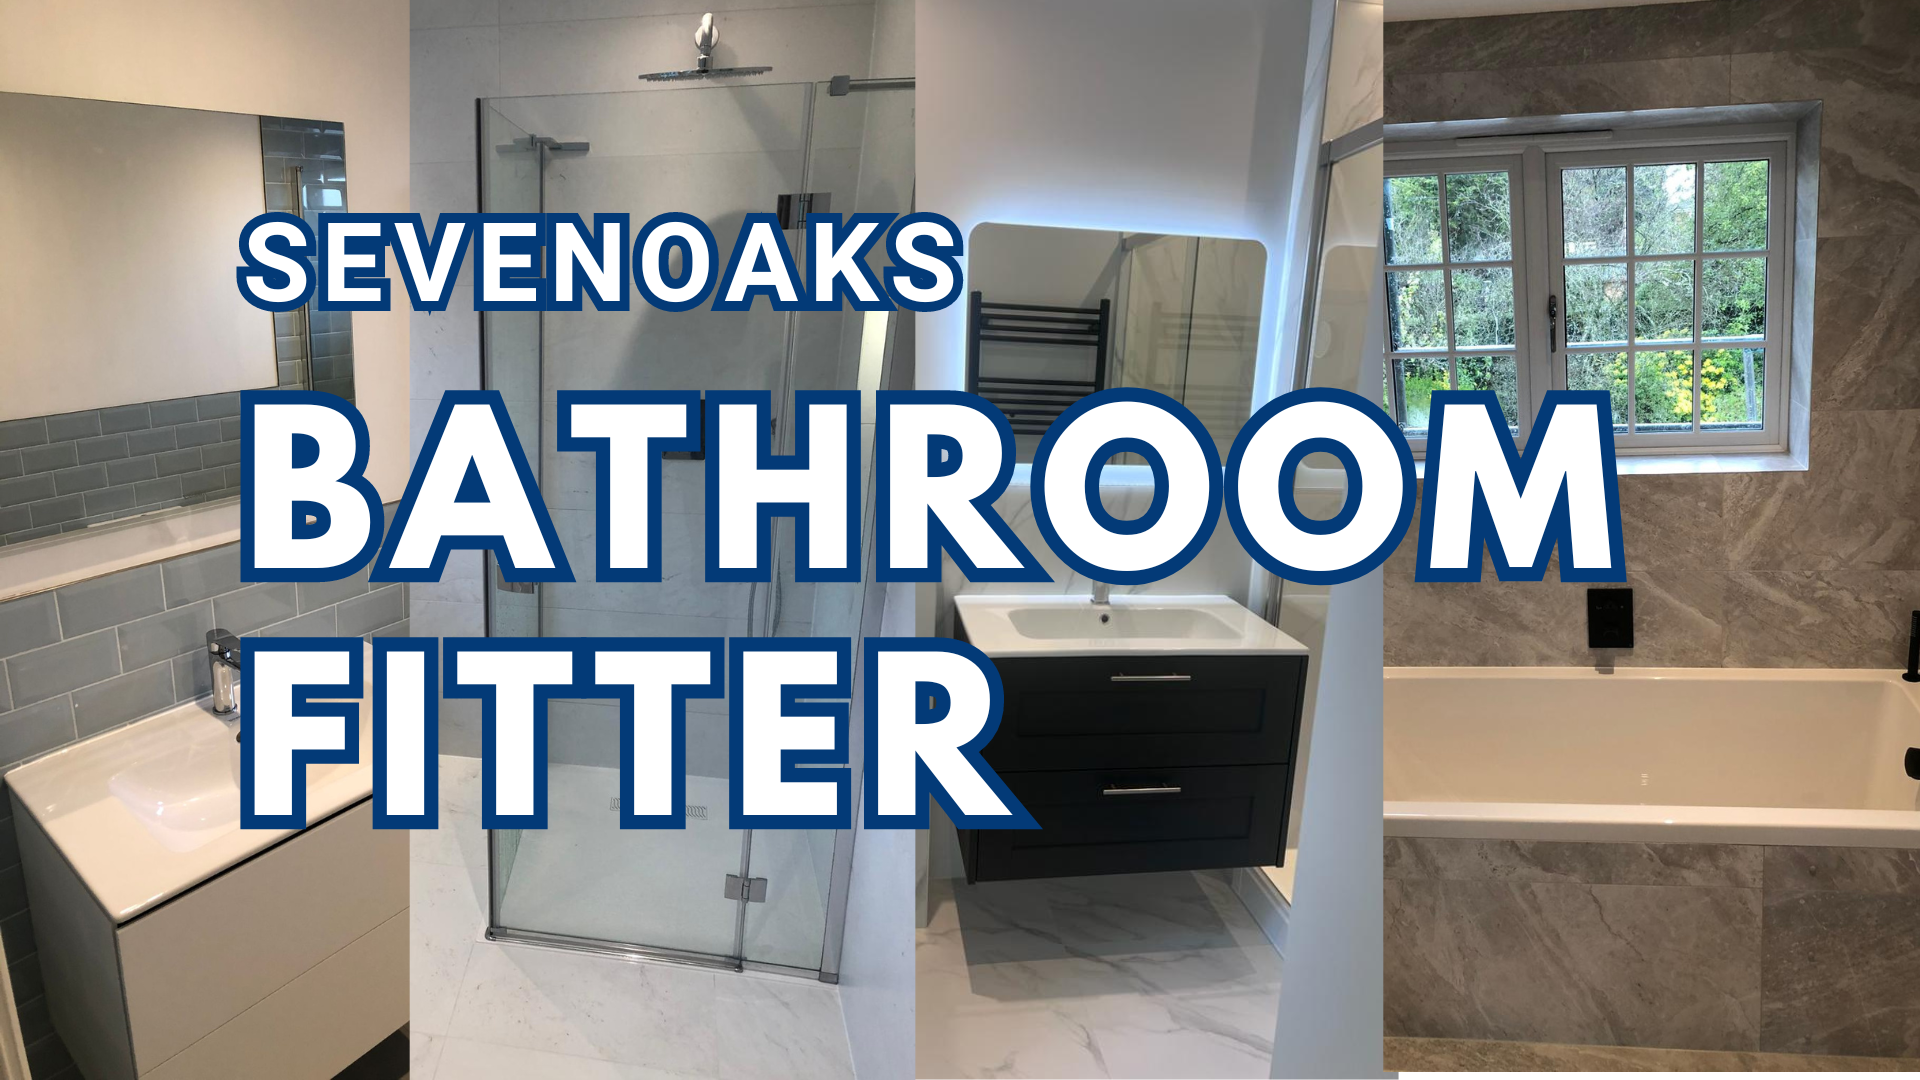 Sevenoaks_bathroom_fitter